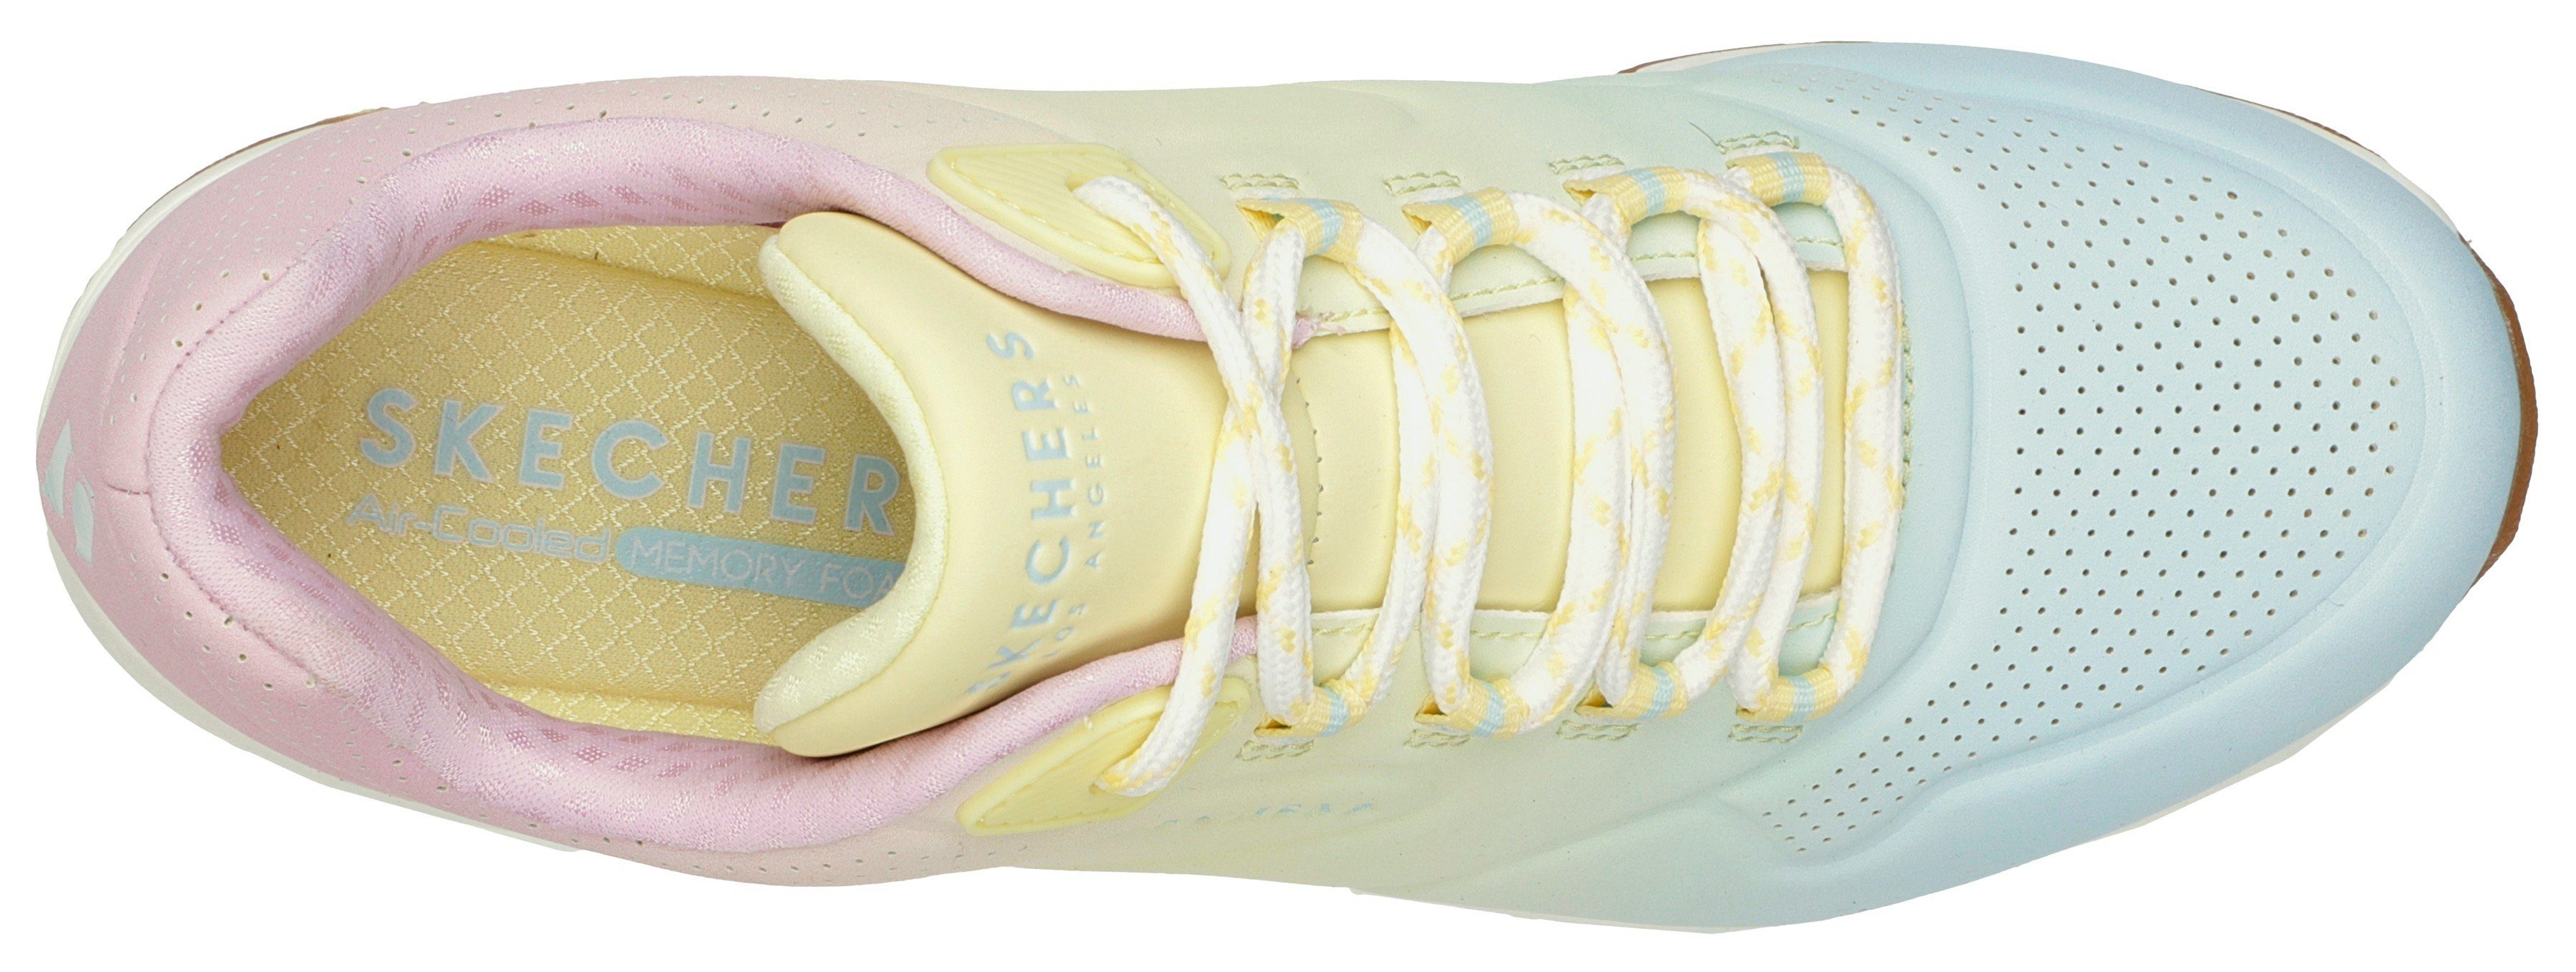 Skechers Farbkombi leuchtender in 2 UNO Sneaker weiß-kombiniert OMBRE AWAY